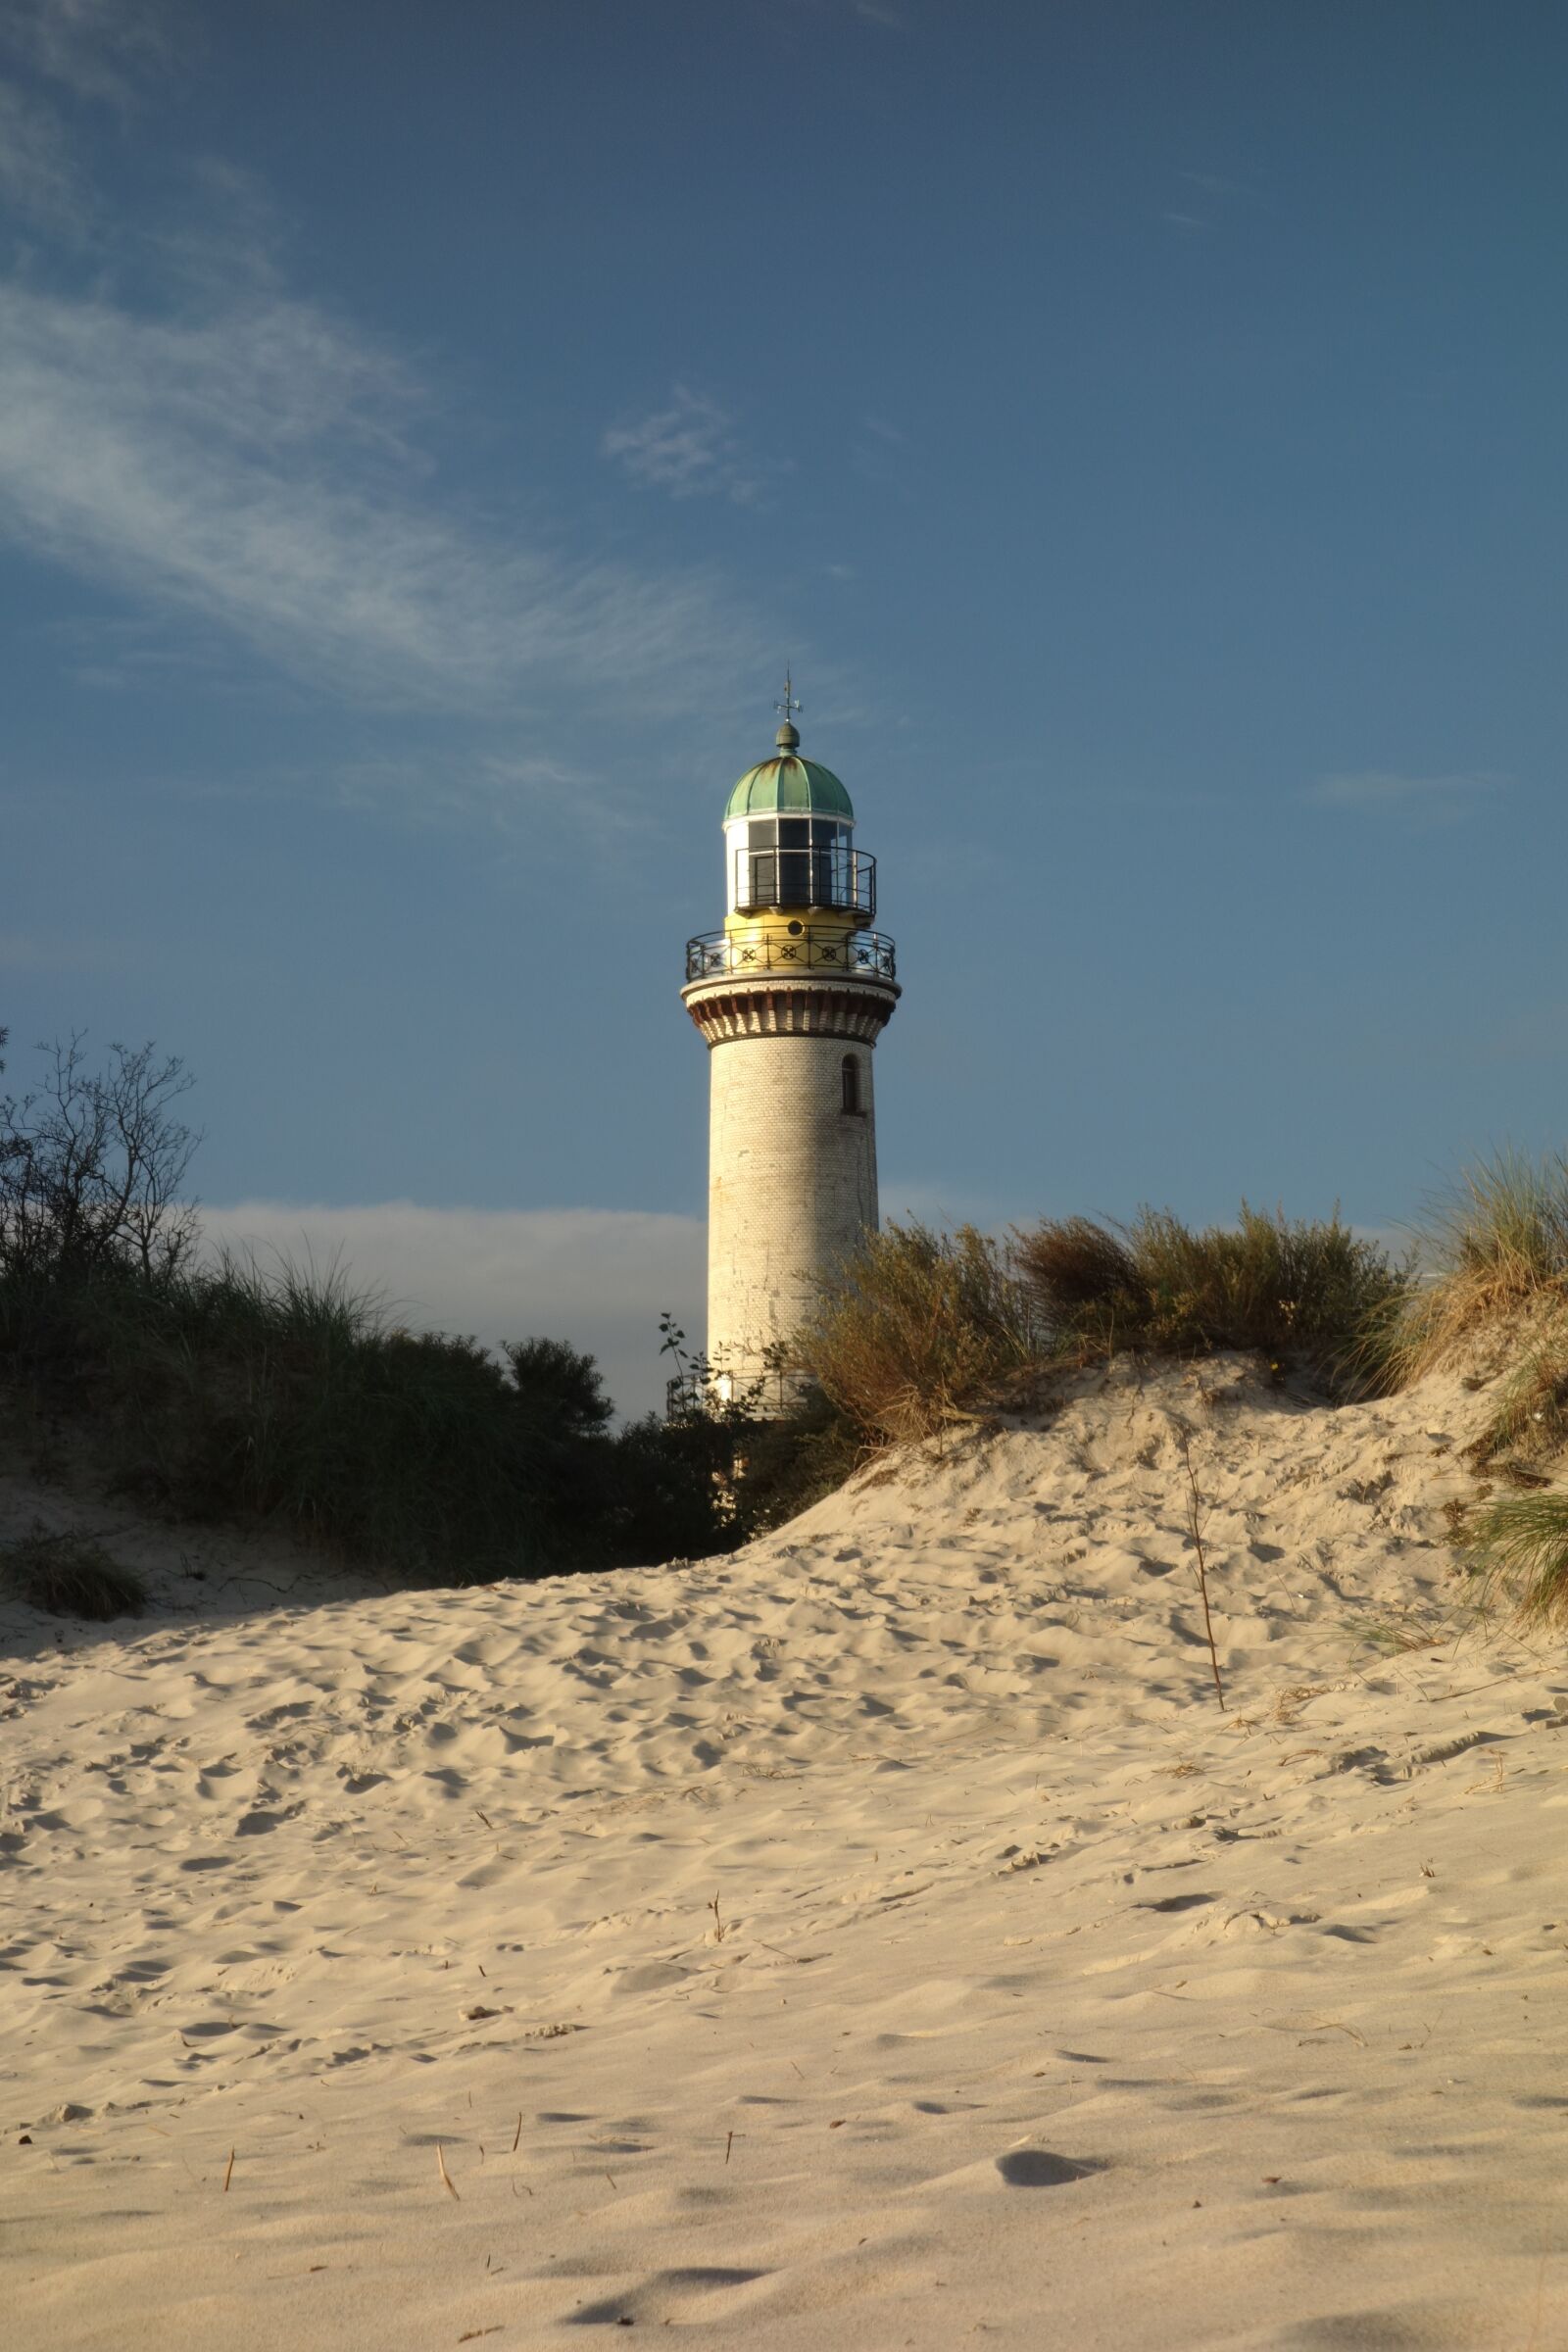 Sony Cyber-shot DSC-RX100 sample photo. Lighthouse, warnemünde, beach photography